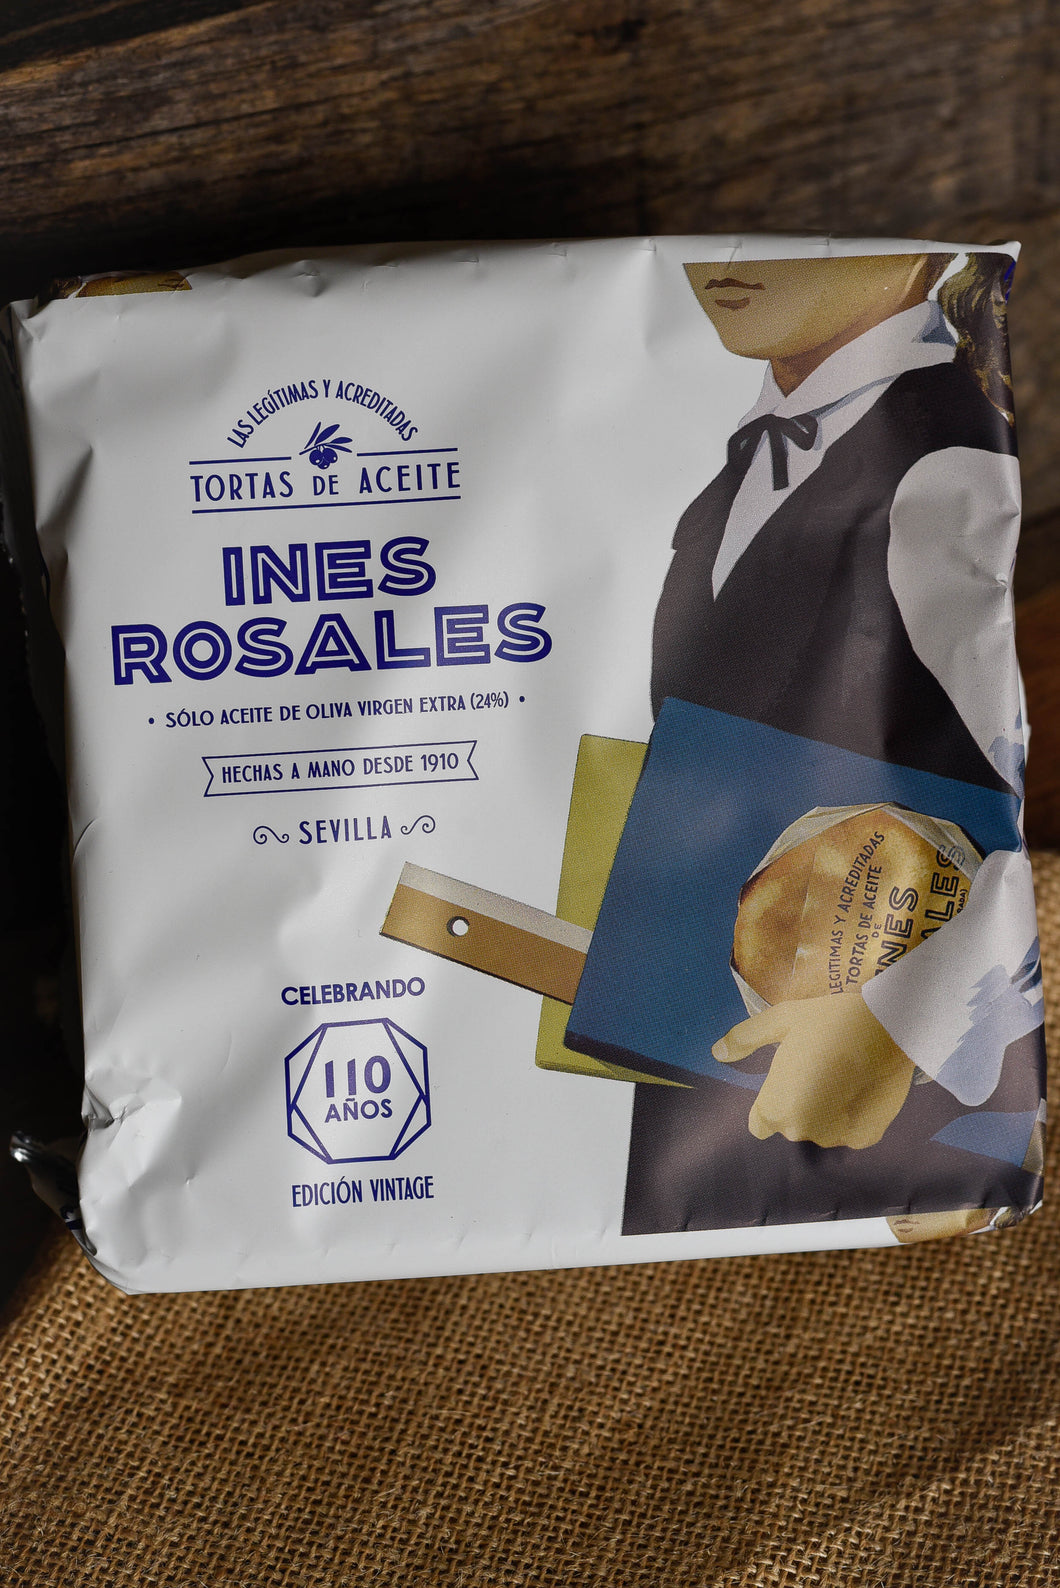 INES ROSALES - Tortas de Aceite (galette) (200g) - Les produits du soleil